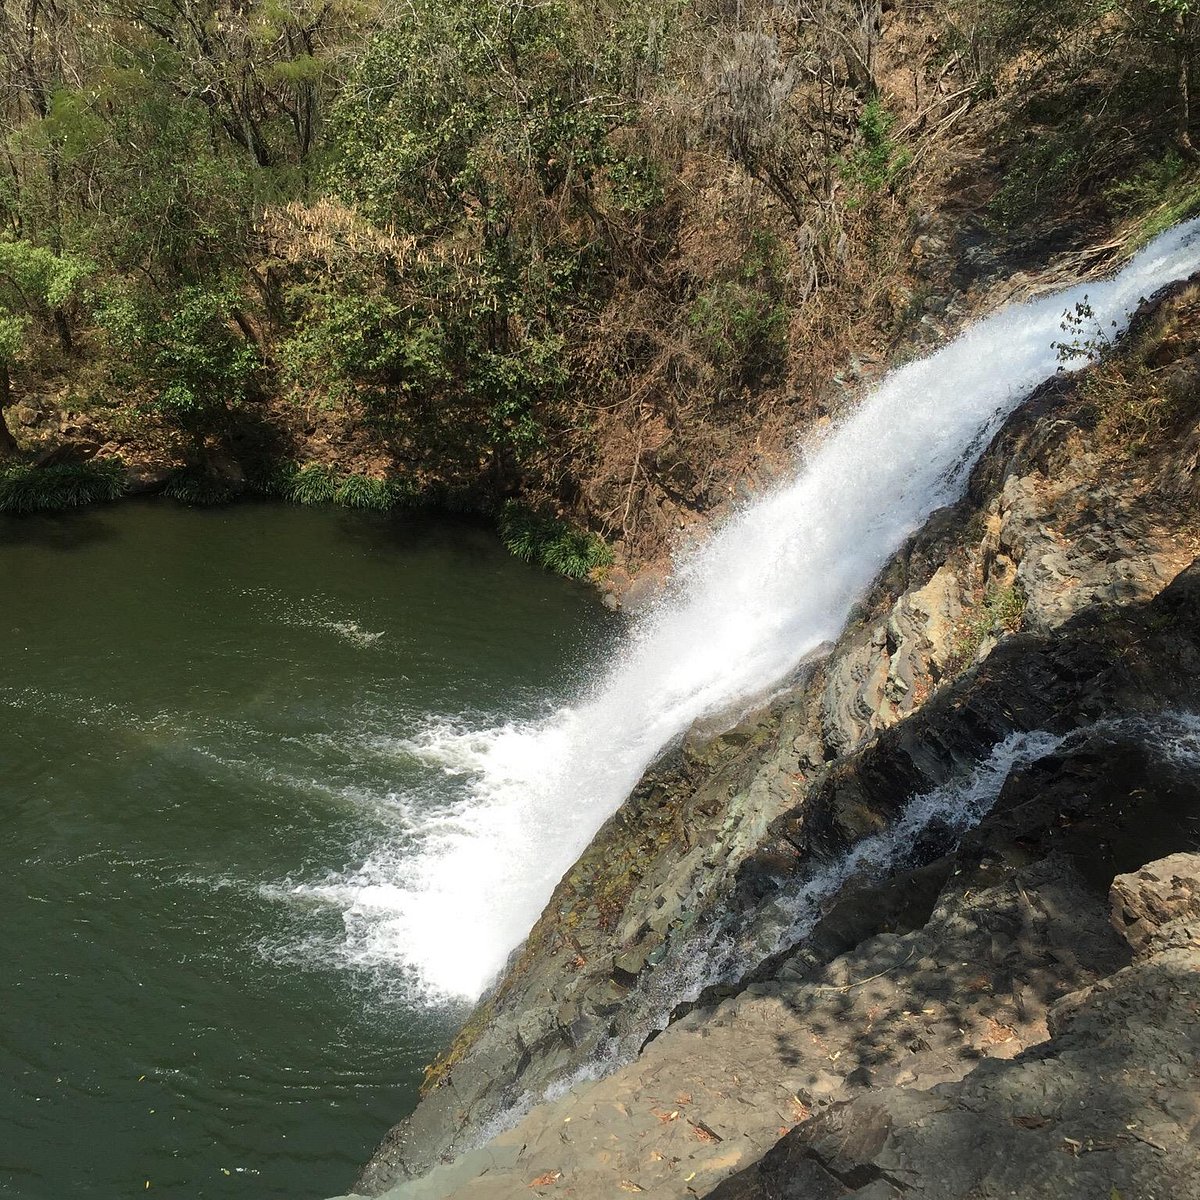 Maravillas naturales: Conoce las cascadas más bonitas de Jalisco